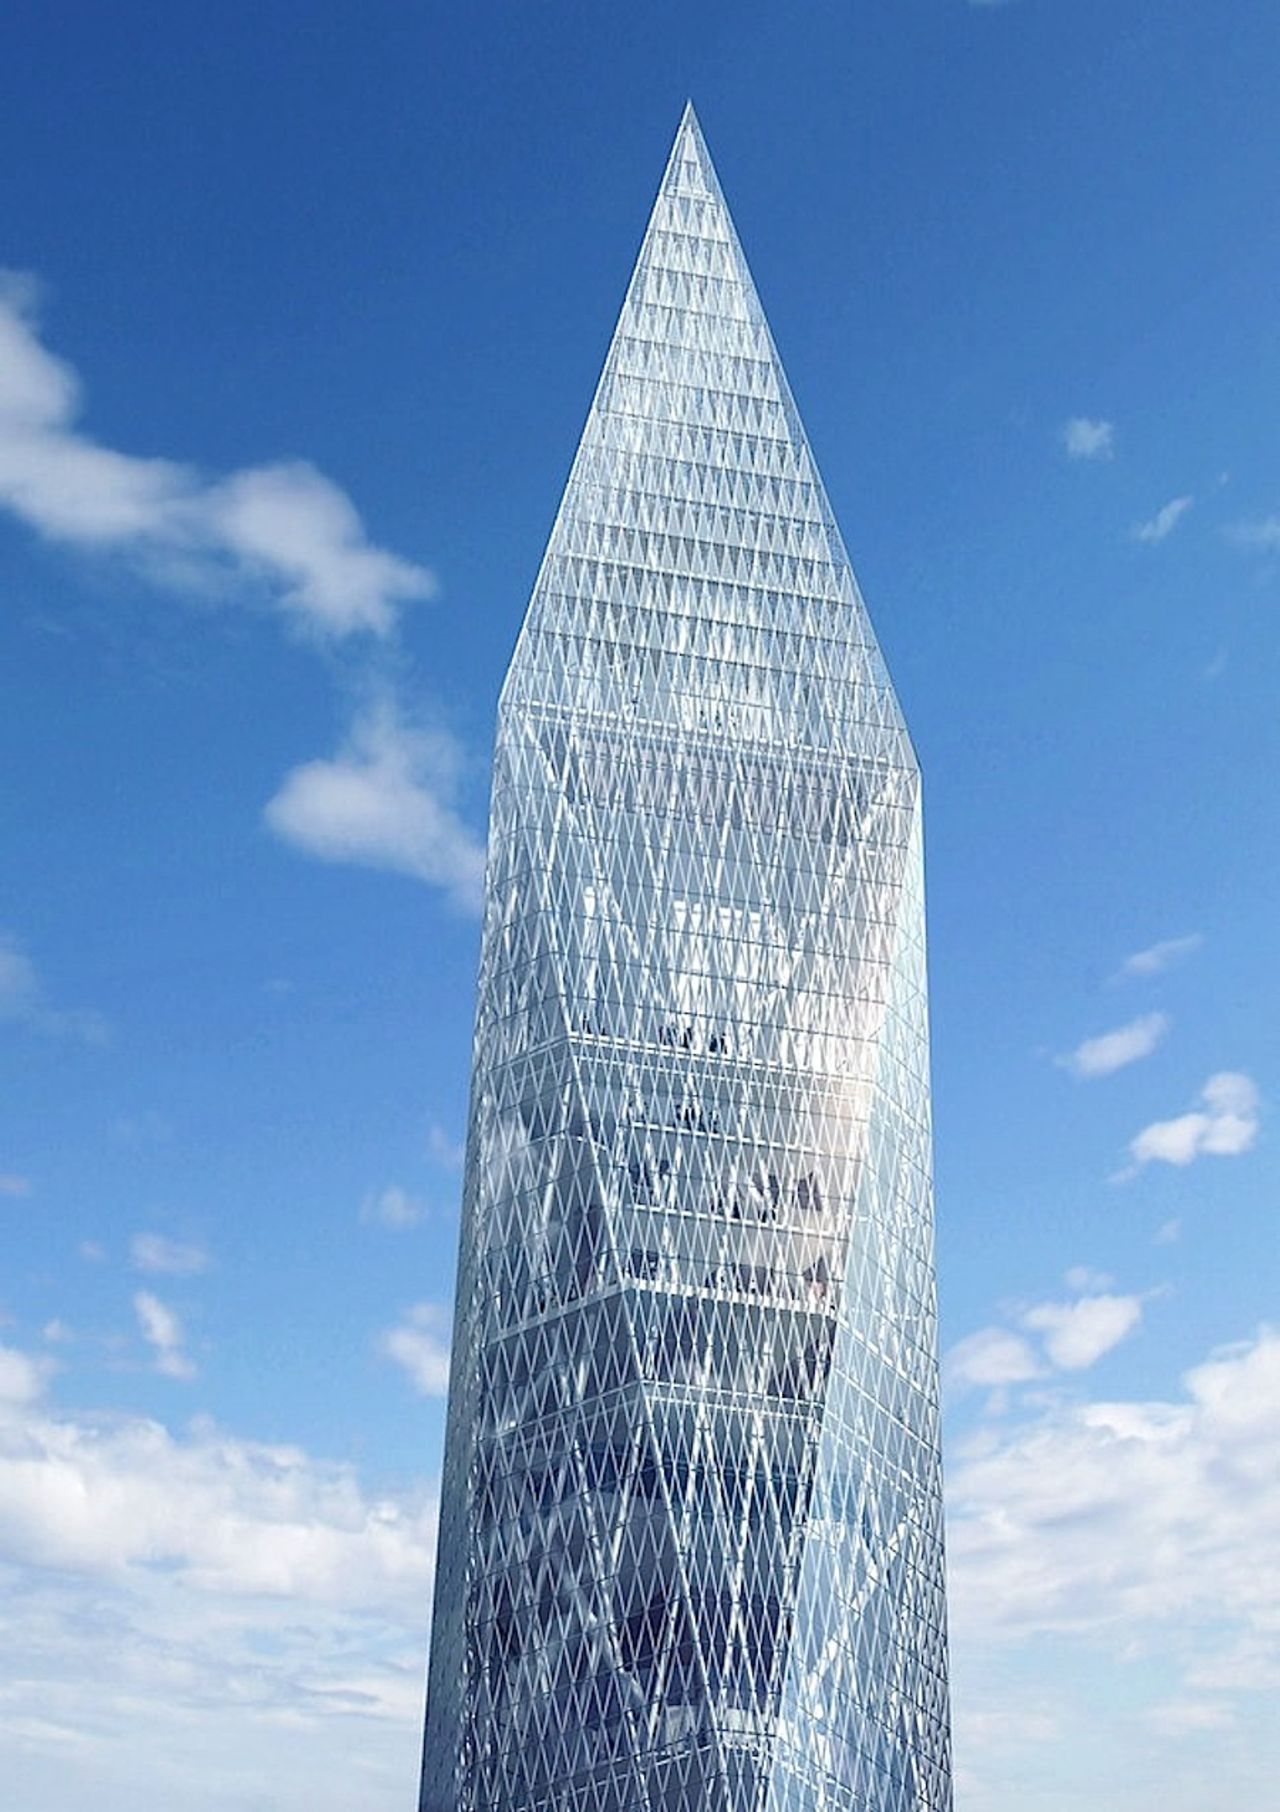 El gobierno de Corea del Sur ha dado su autorización para iniciar la construcción de la primera torre "invisible" del mundo. 